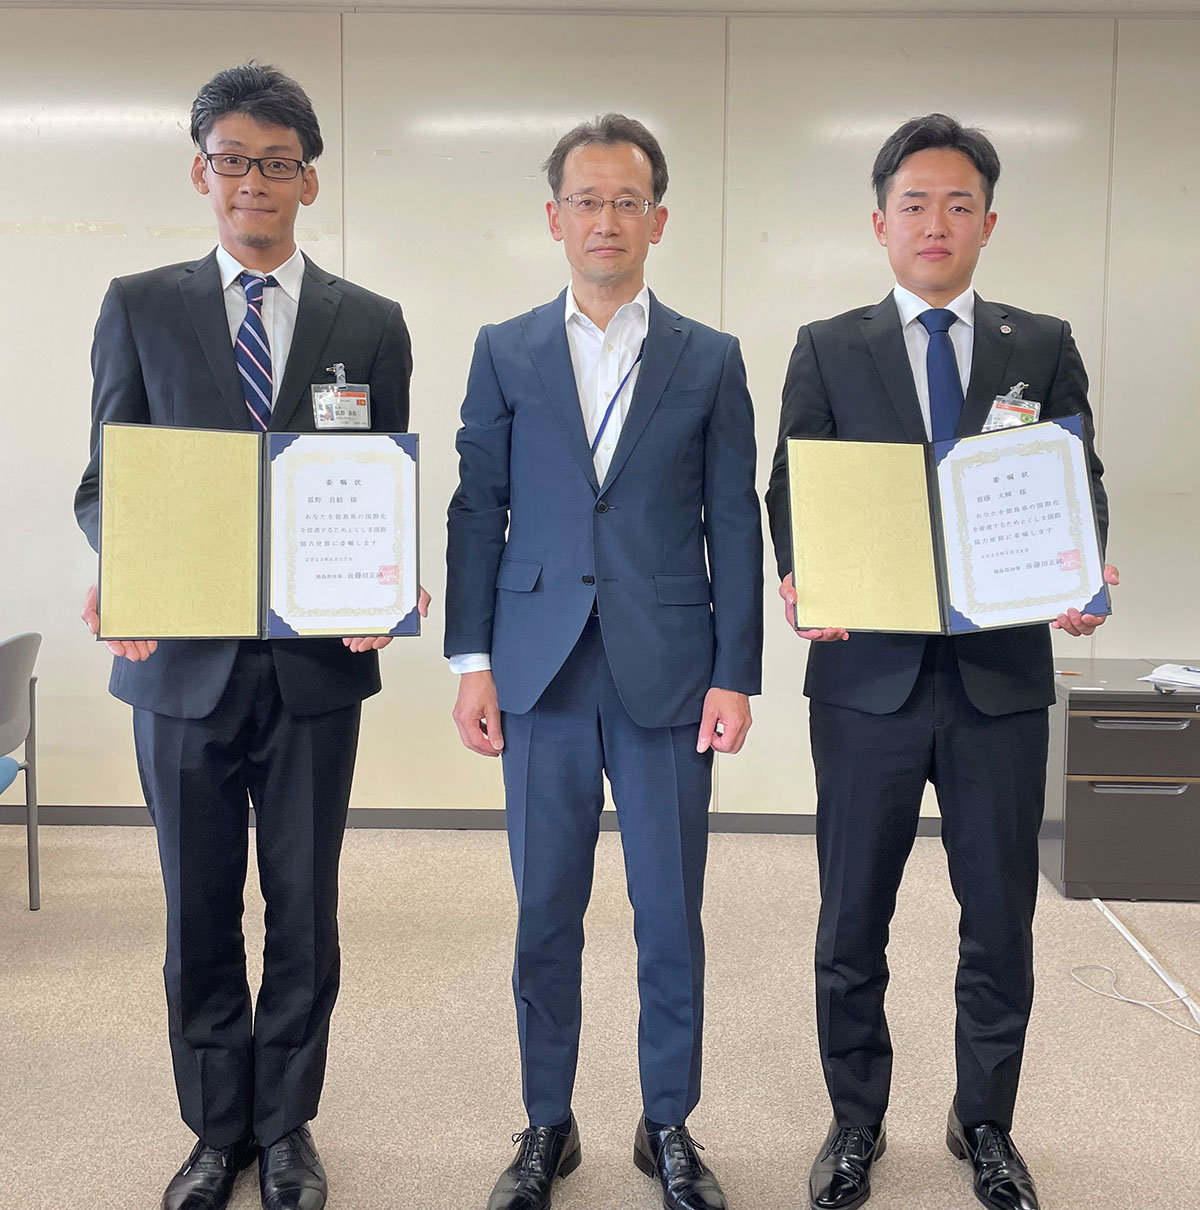 左から狐野さん、未来創生文化部 佐藤部長、喜藤さん